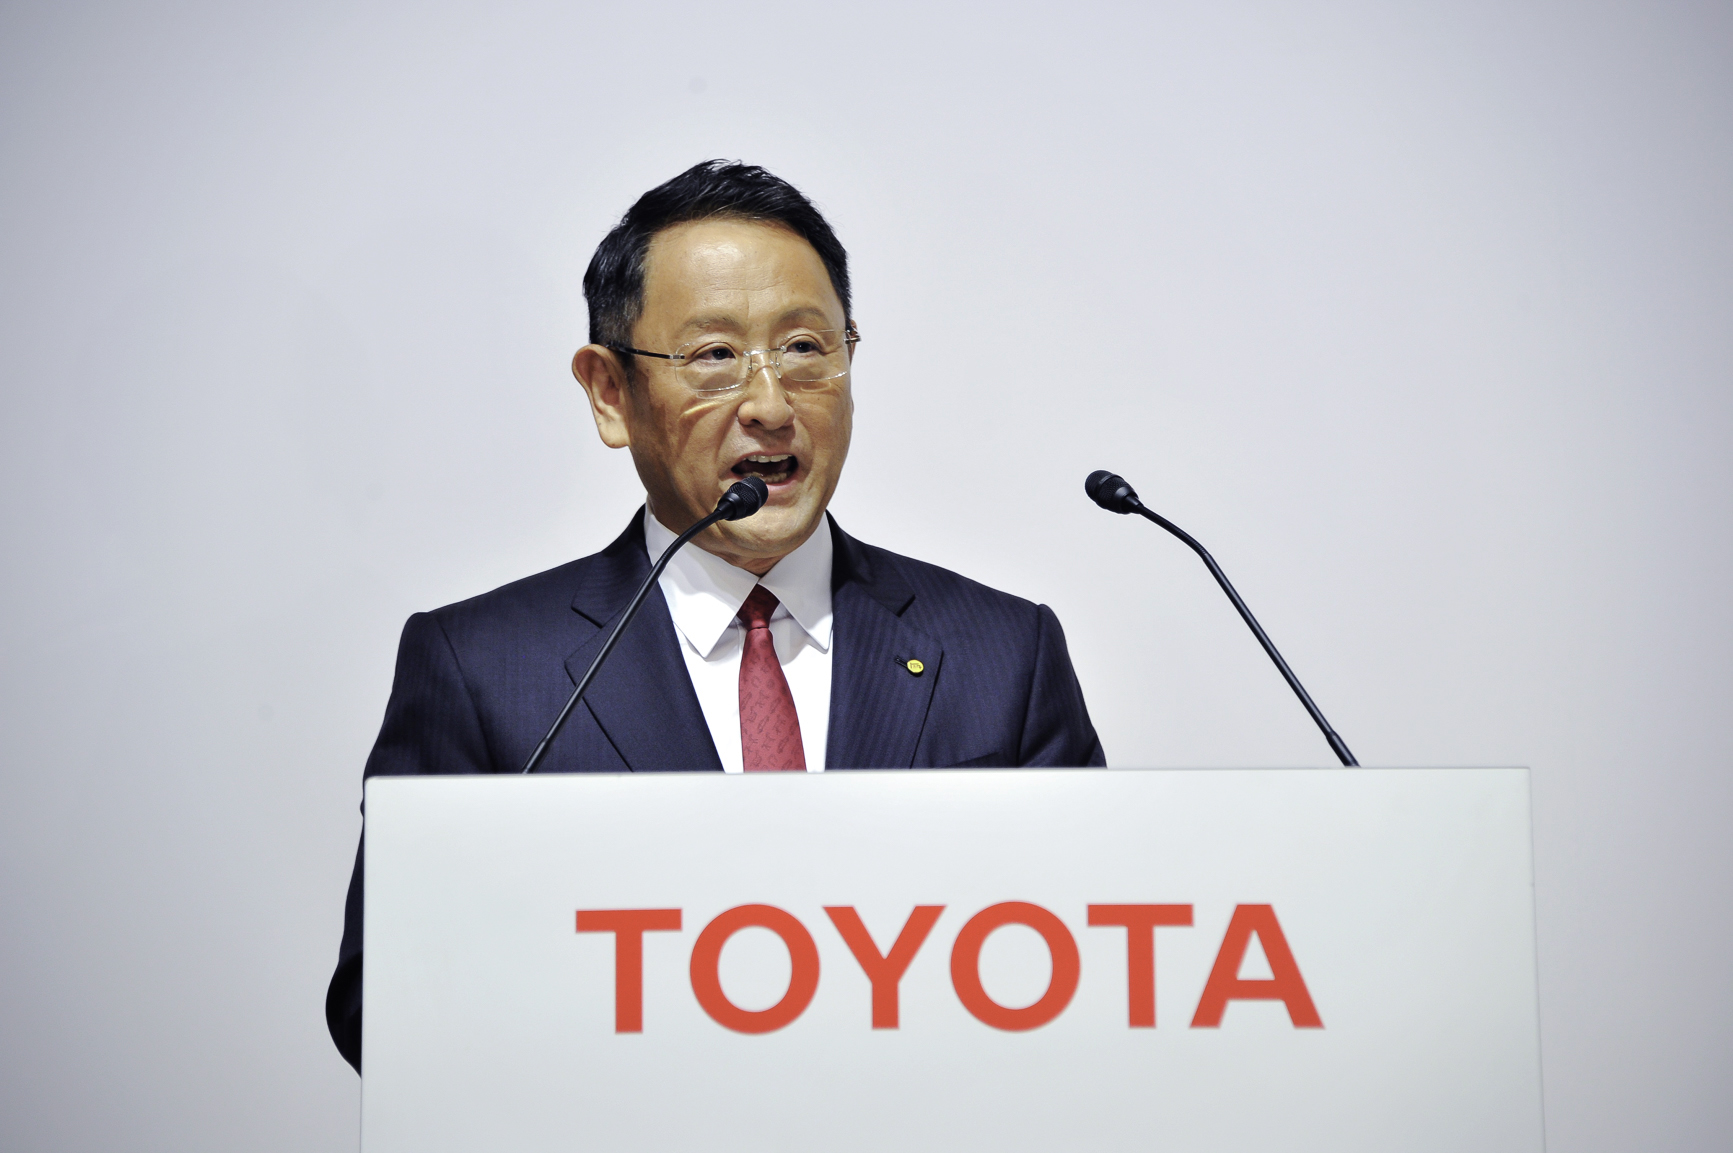 Giám đốc điều hành Toyota Akio Toyoda, đồng thời là chủ tịch hiệp hội các nhà sản xuất ô tô của Nhật Bản, không hài lòng với việc thúc đẩy trung lập carbon của chính phủ Nhật Bản lấy EV làm trung tâm. Ảnh: @AFP.